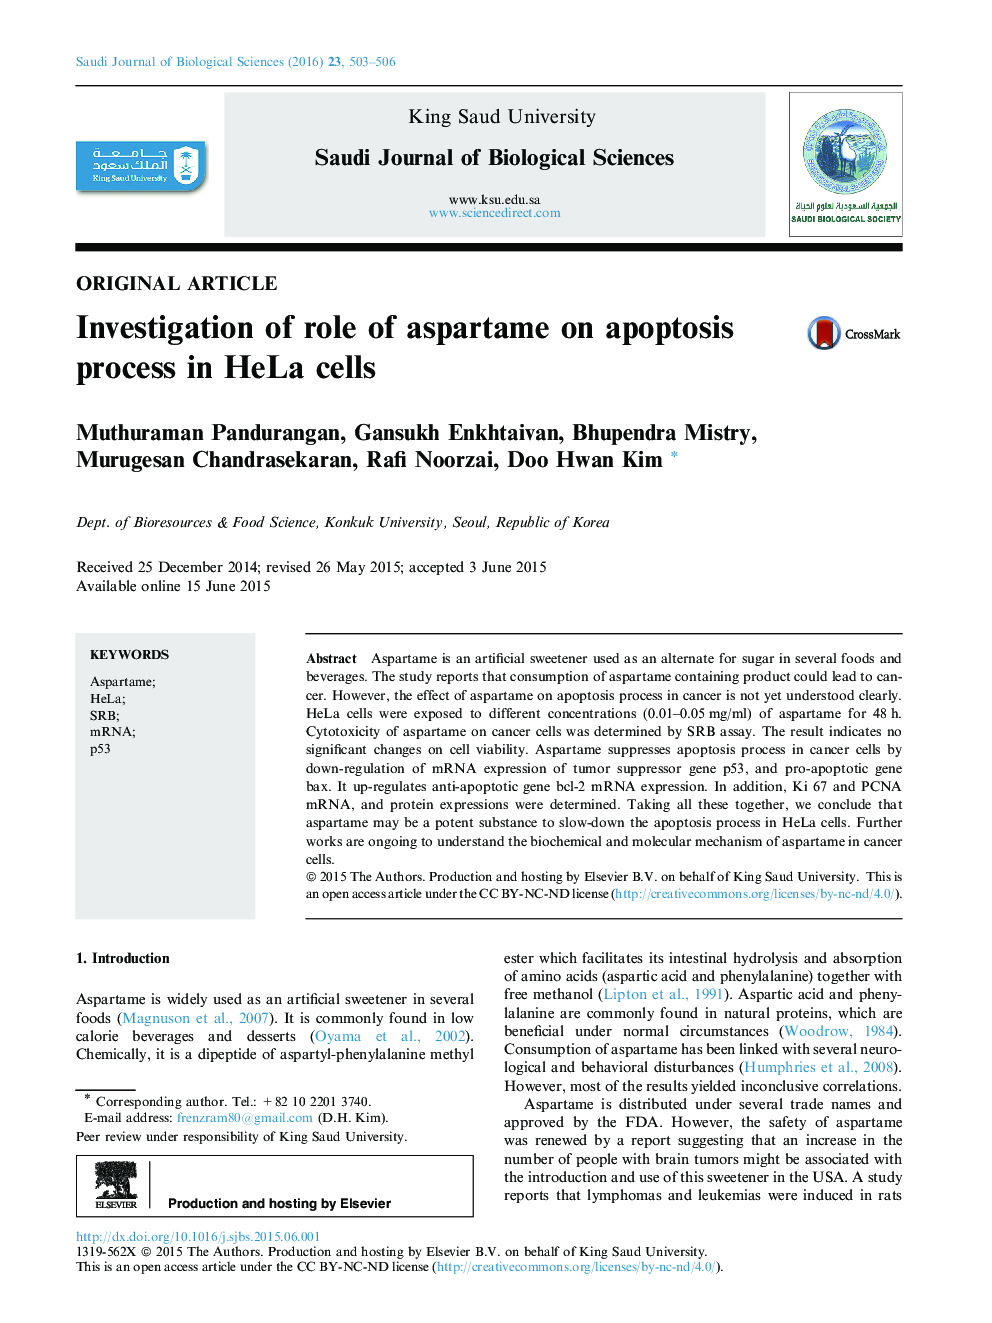 بررسی نقش آسپارتام در روند آپوپتوز در سلول های HeLa ->